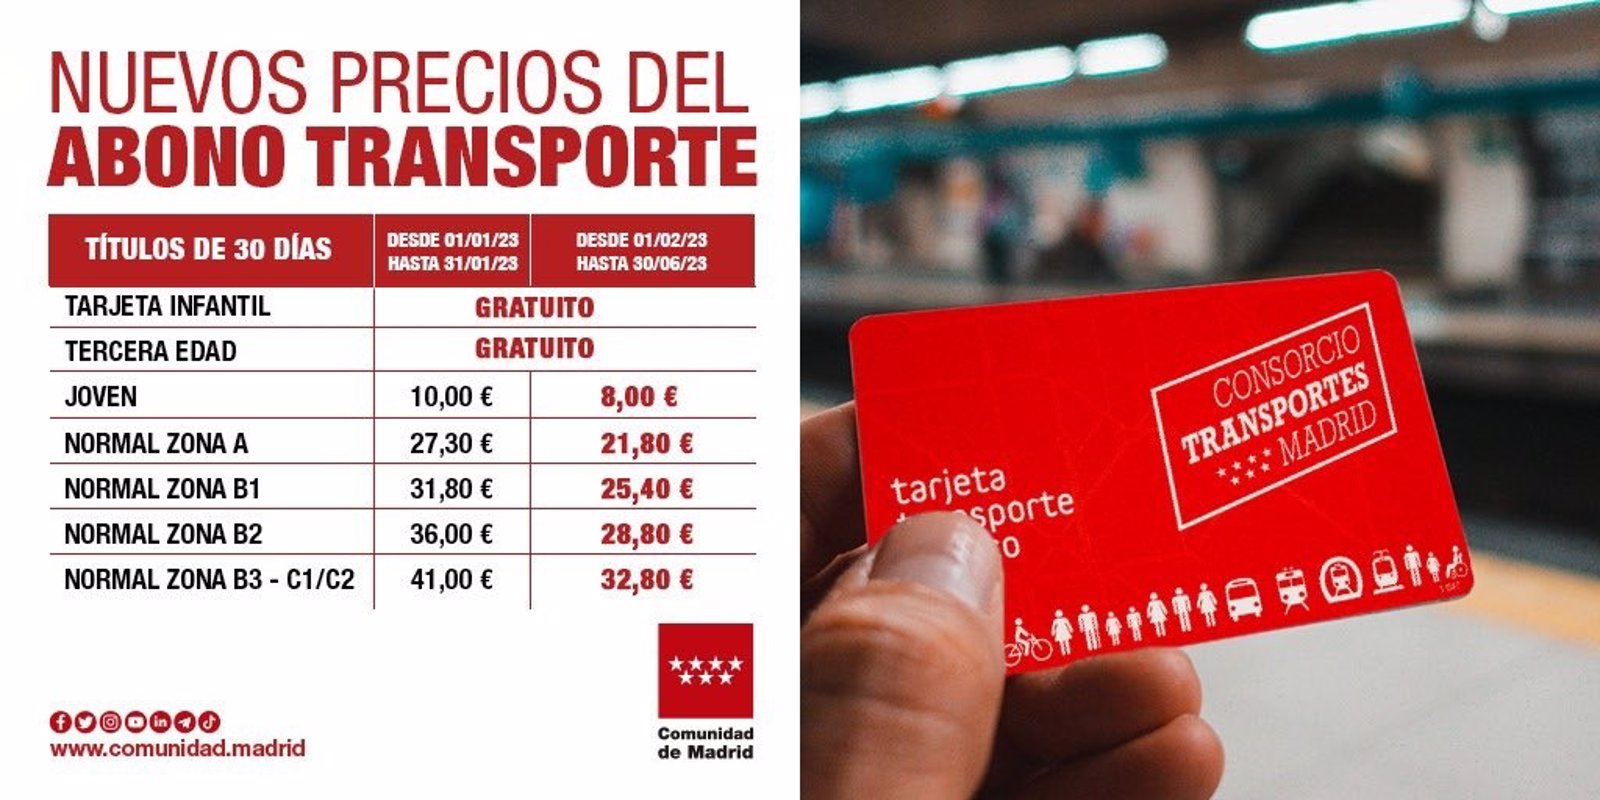 Personas mayores y niños viajarán gratis en transporte público y la zona A pasará a costar 21,80 euros